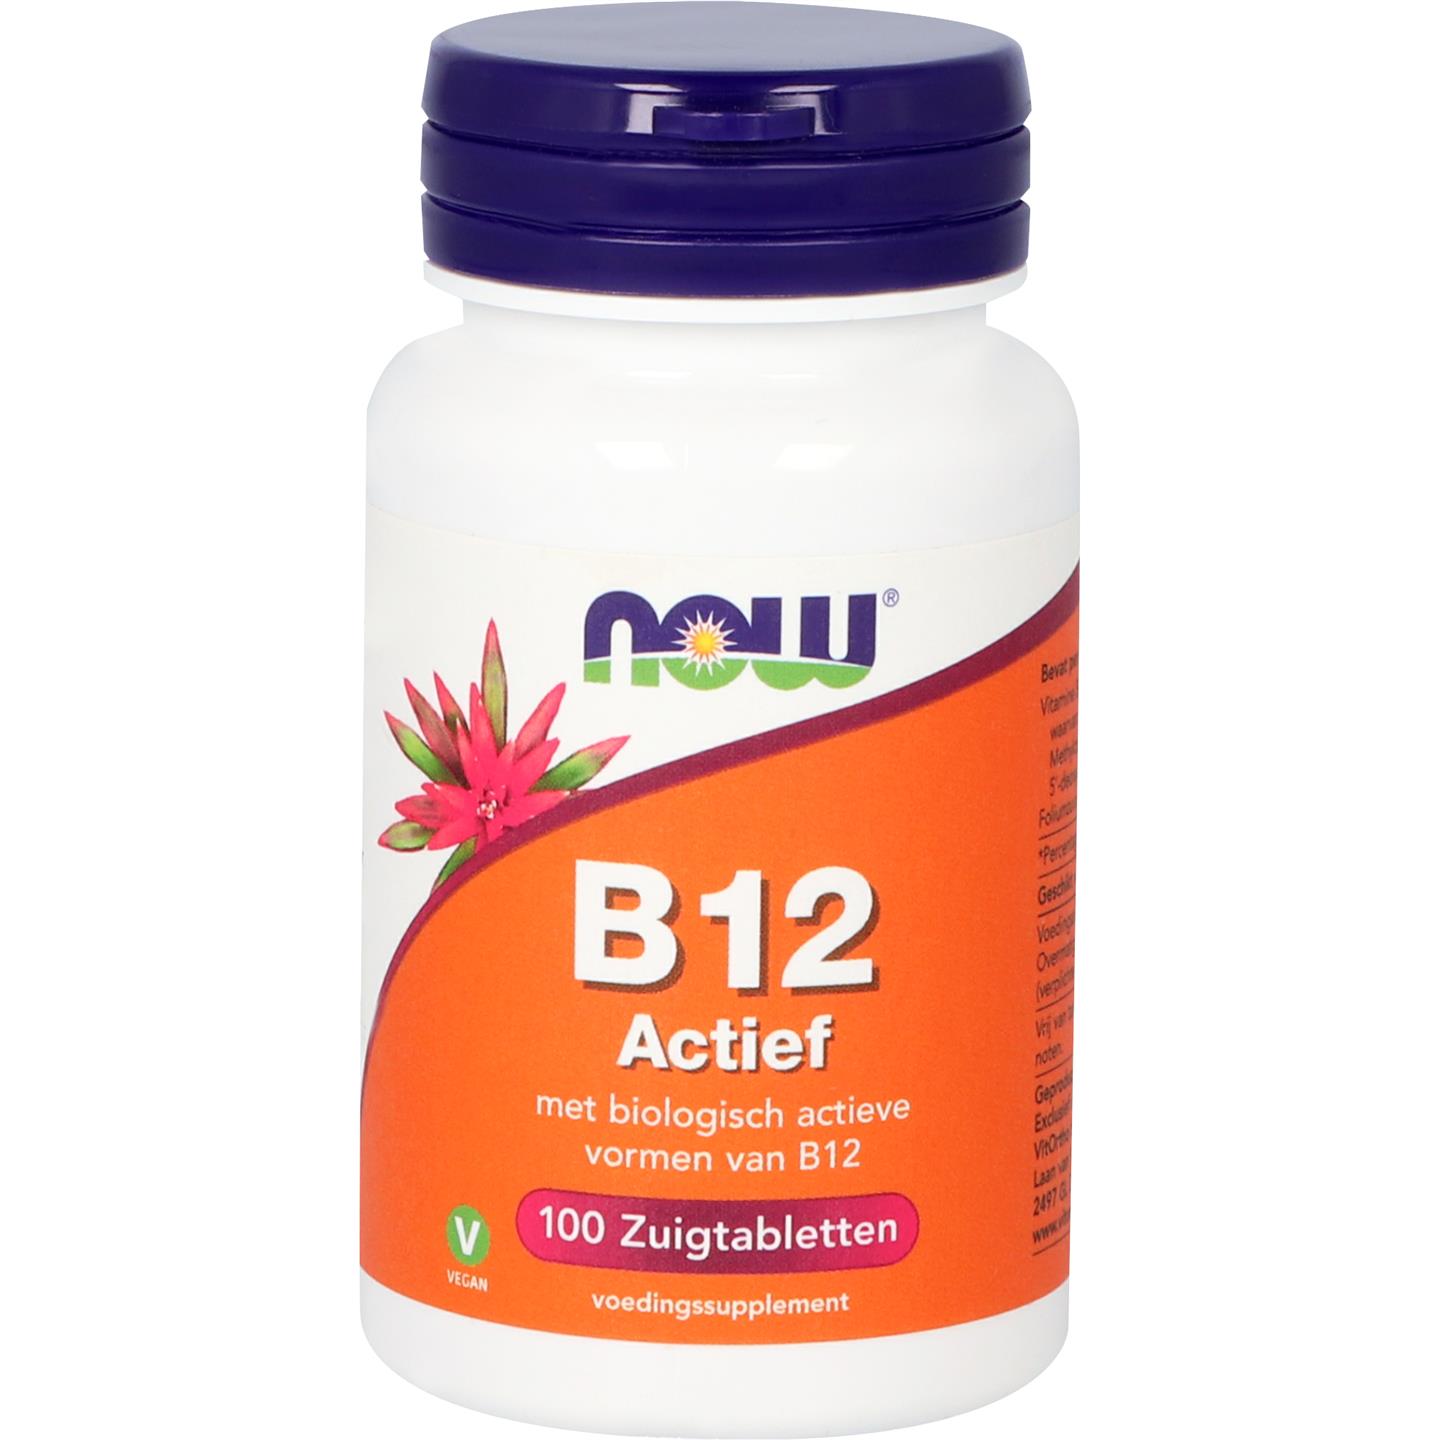 B12 Actief